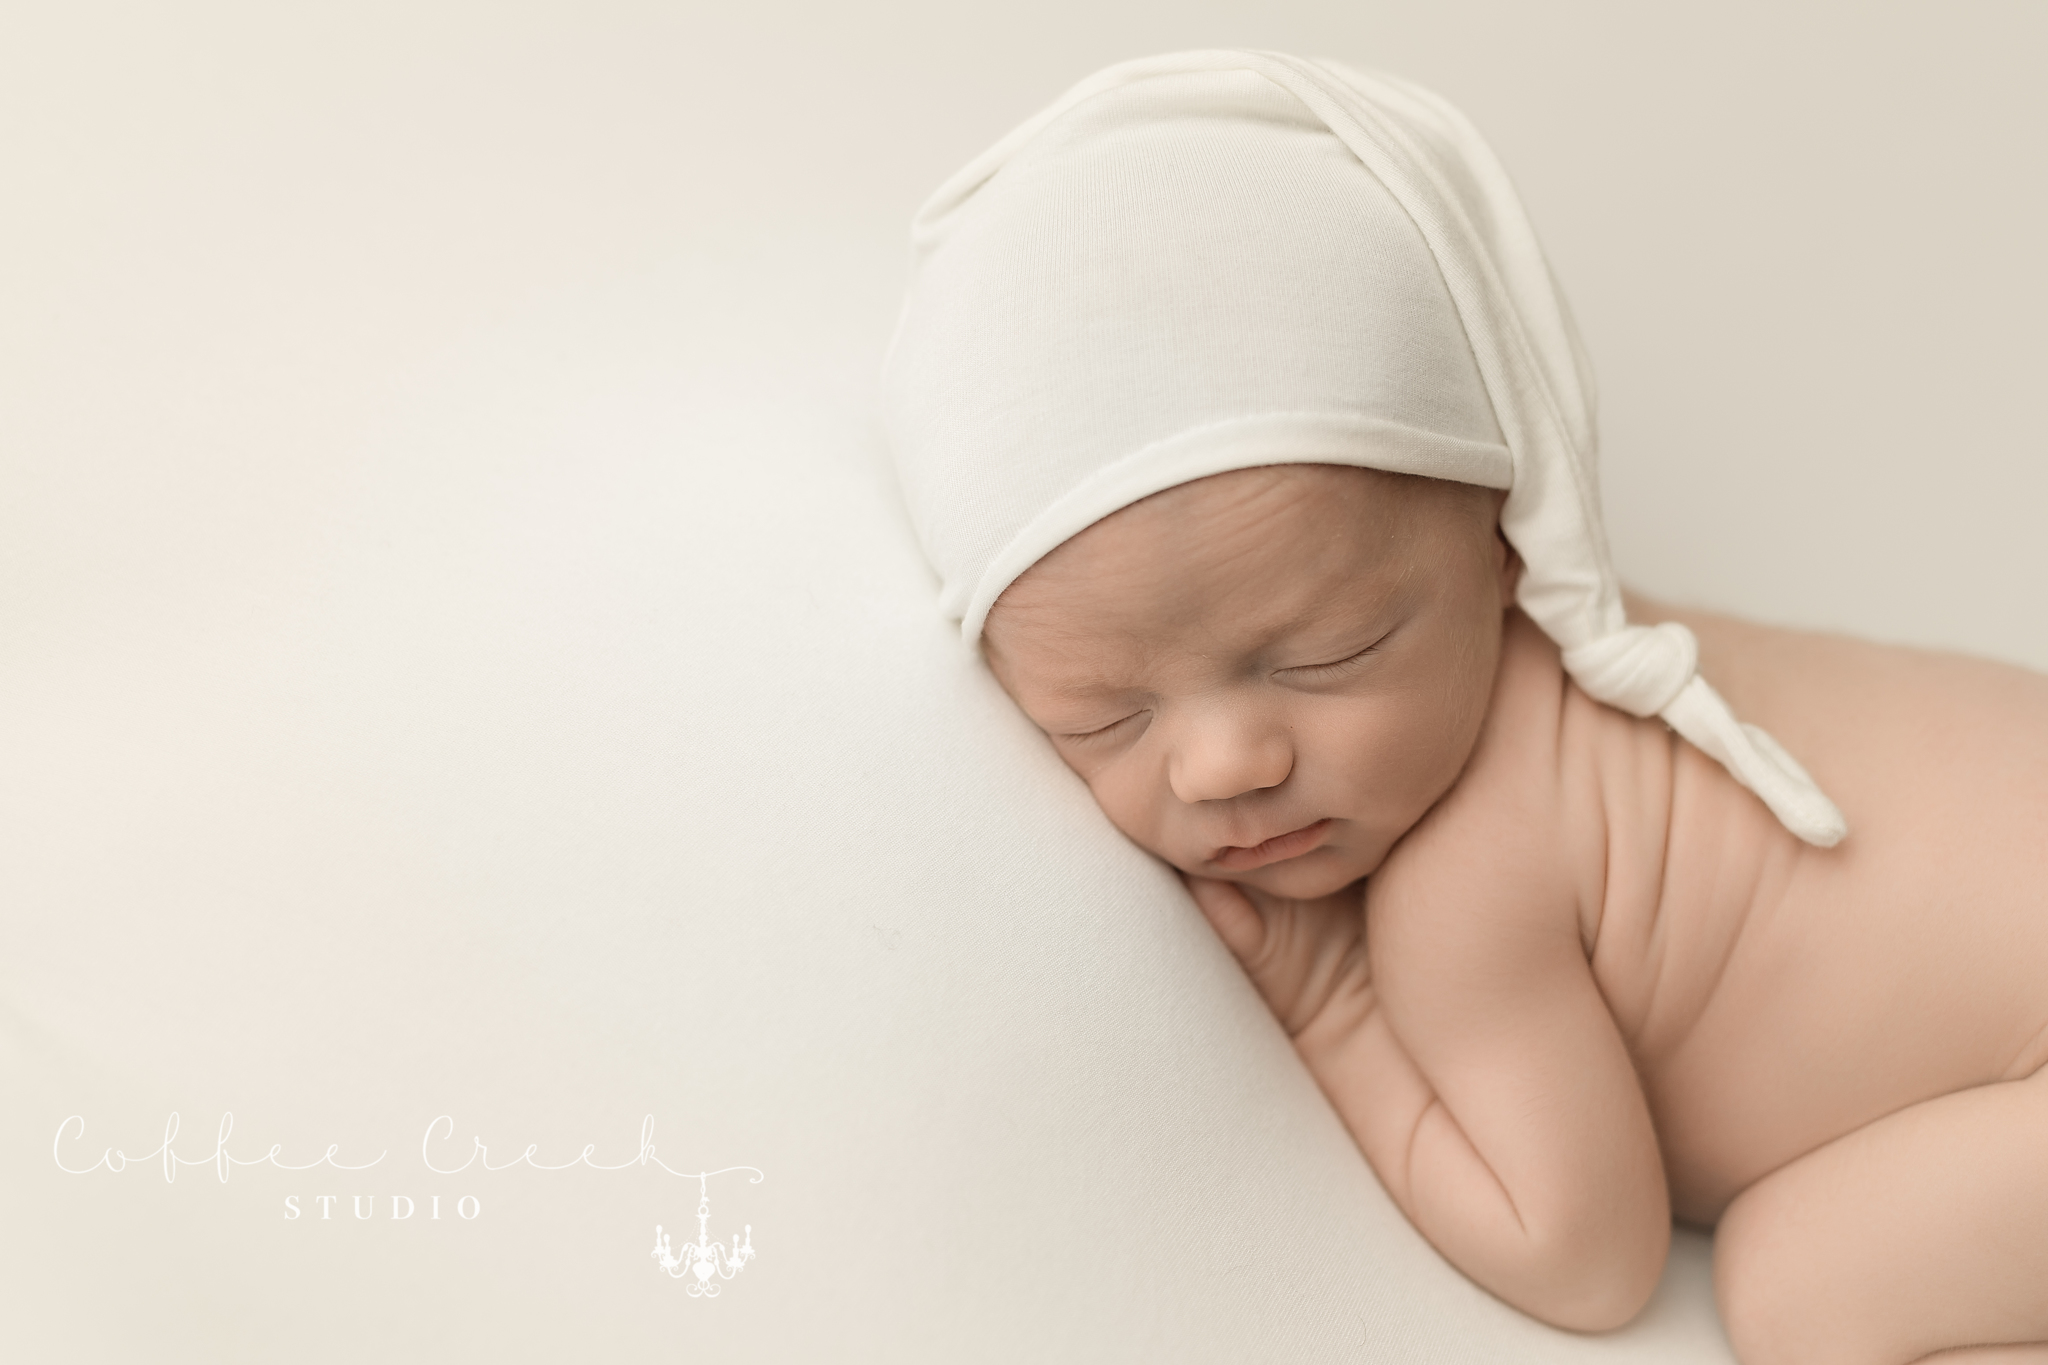 posed newborn sleeping in rip van winkle cap